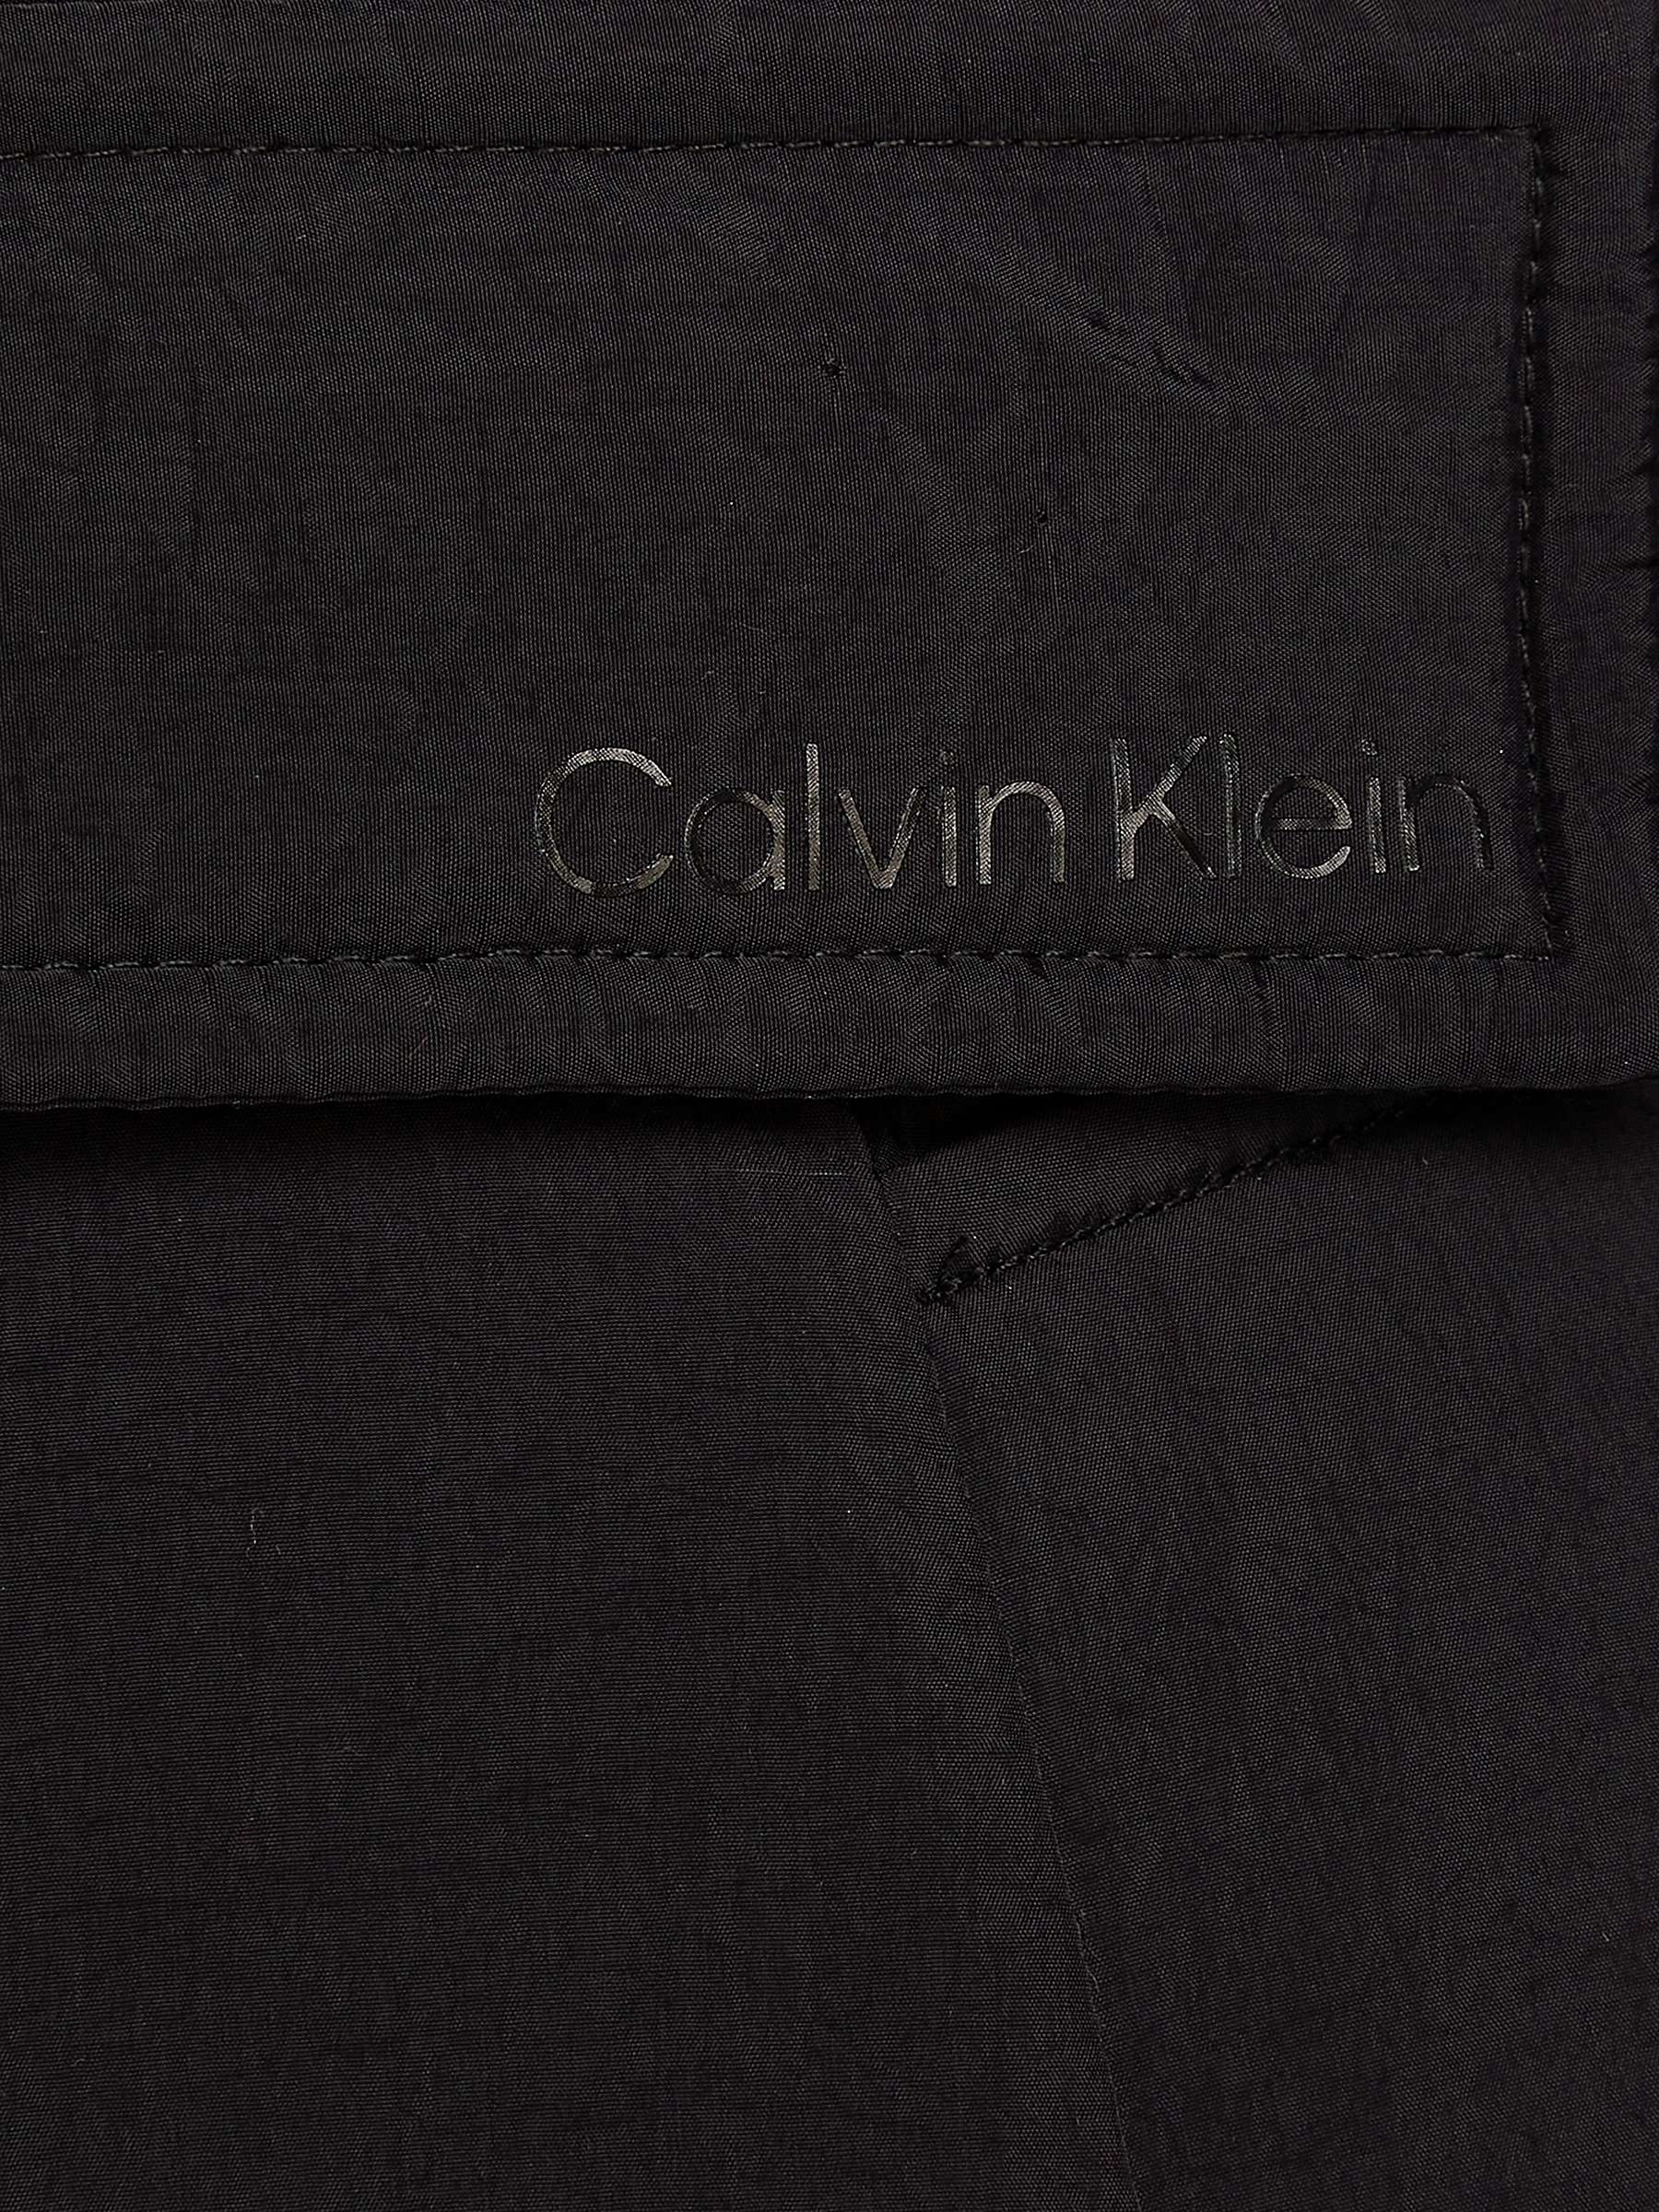 Buy Calvin Klein Wrap Belted Jacket, CK Black Online at johnlewis.com